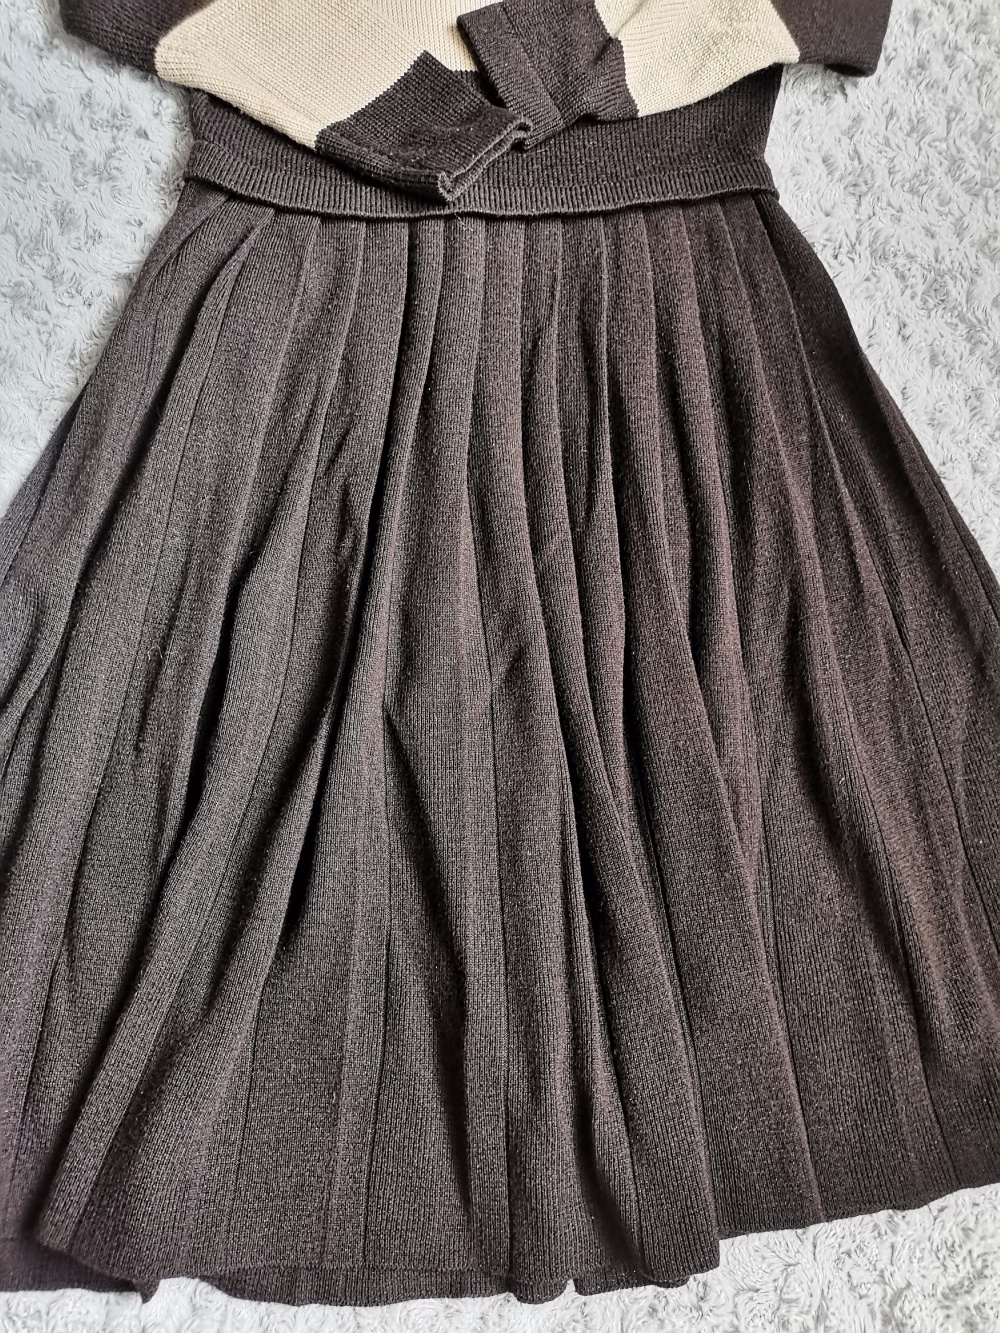 Платье MaxMara, размер 42-44, 44 росс.